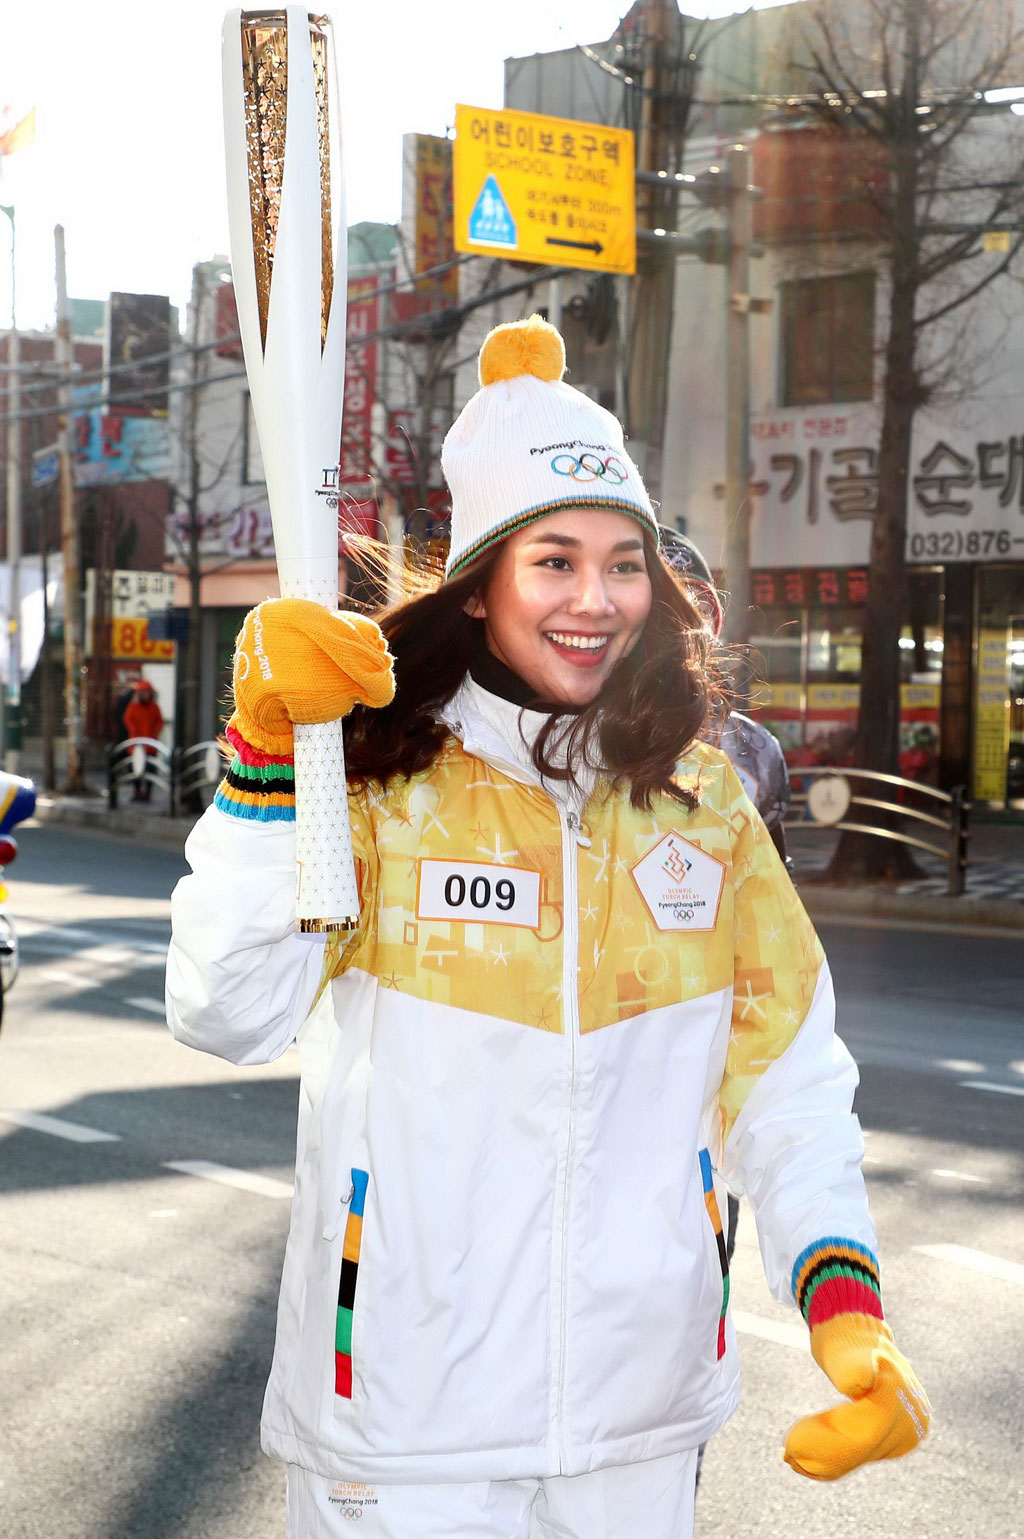 Follow thế giới sao: Thanh Hằng rước đuốc tại thế vận hội mùa đông 2018 1